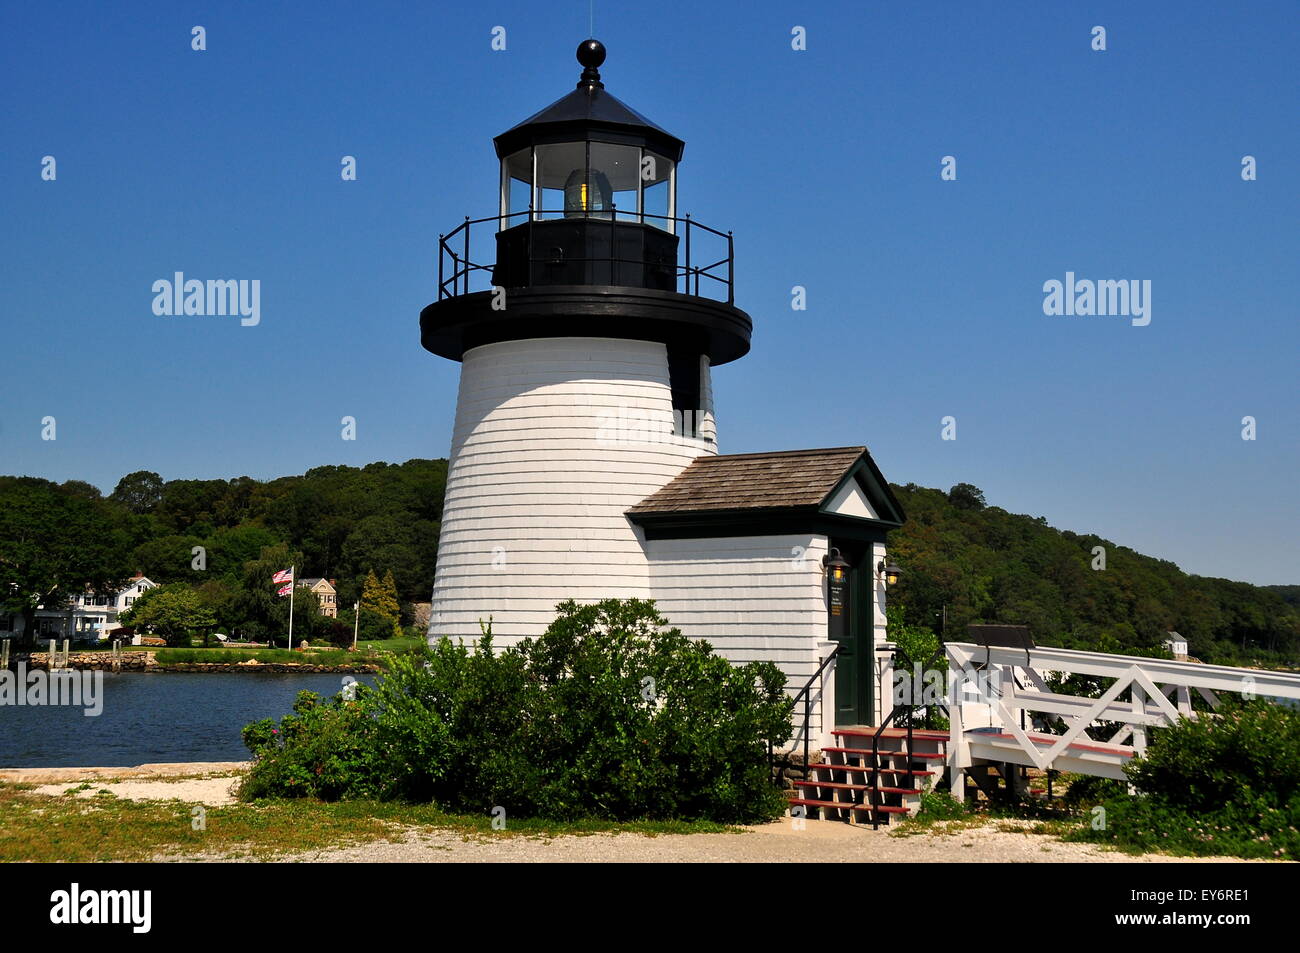 Mystic, CT: 1966 Brant Point Lighthouse, una réplica de la original del siglo XVIII, en el faro de Nantucket Mystic Seaport * Foto de stock